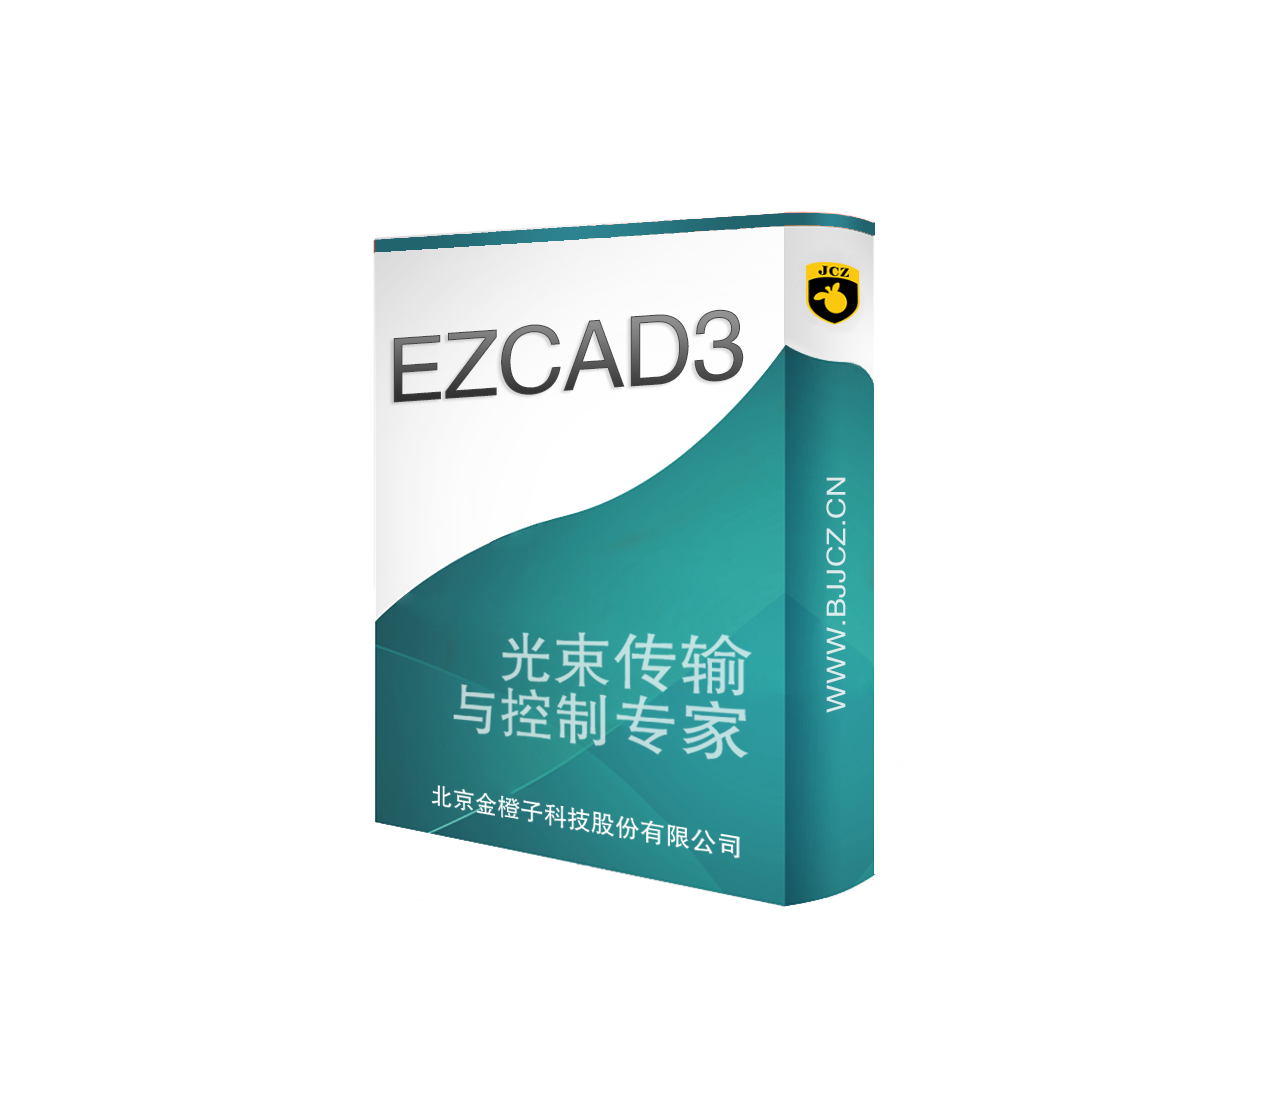 Ezcad3激光标刻控制系统 